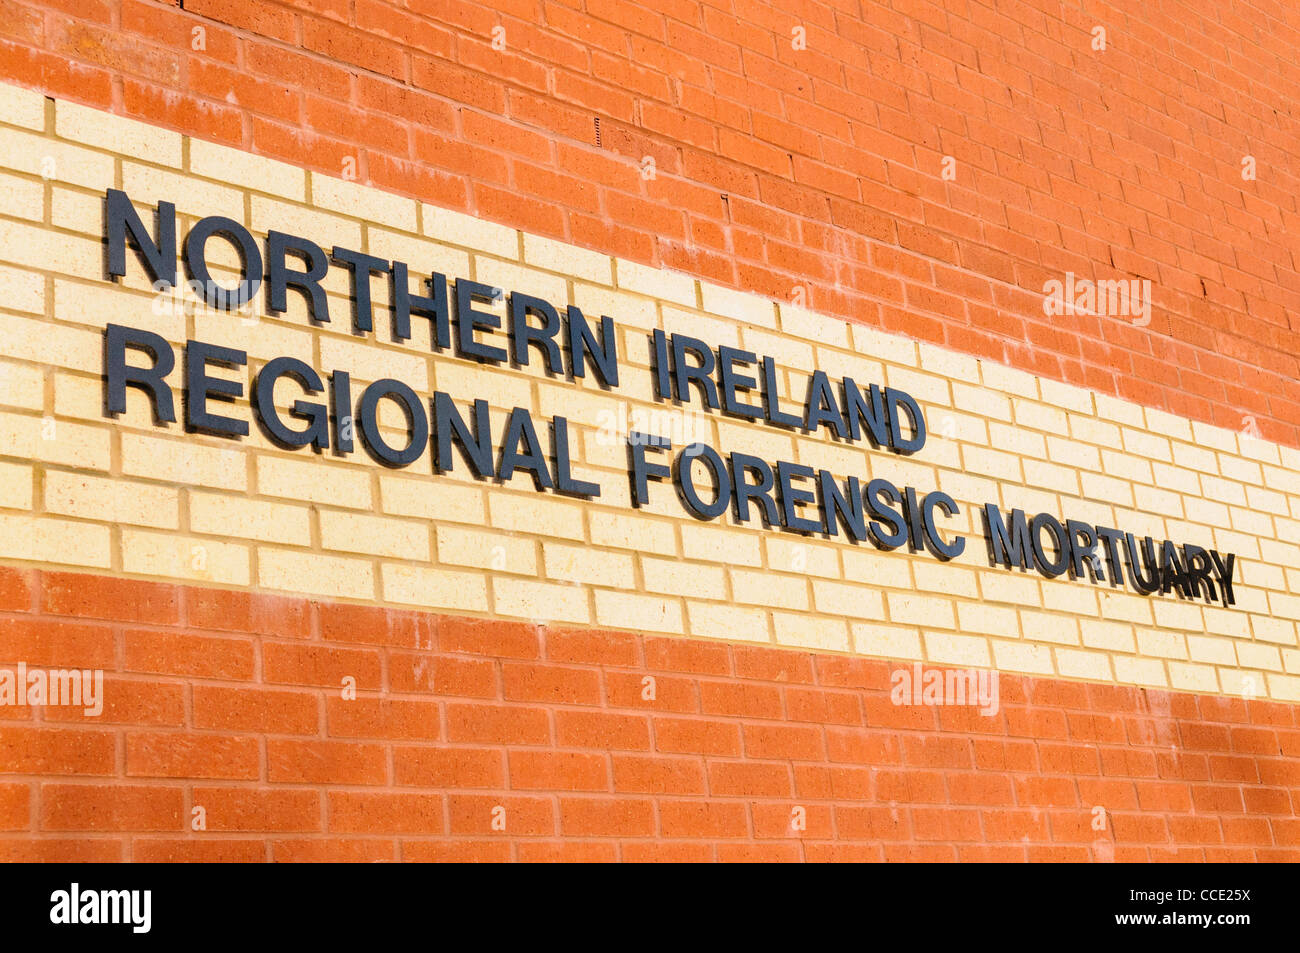 Irlanda del Nord regionale mortuaria forense Foto Stock